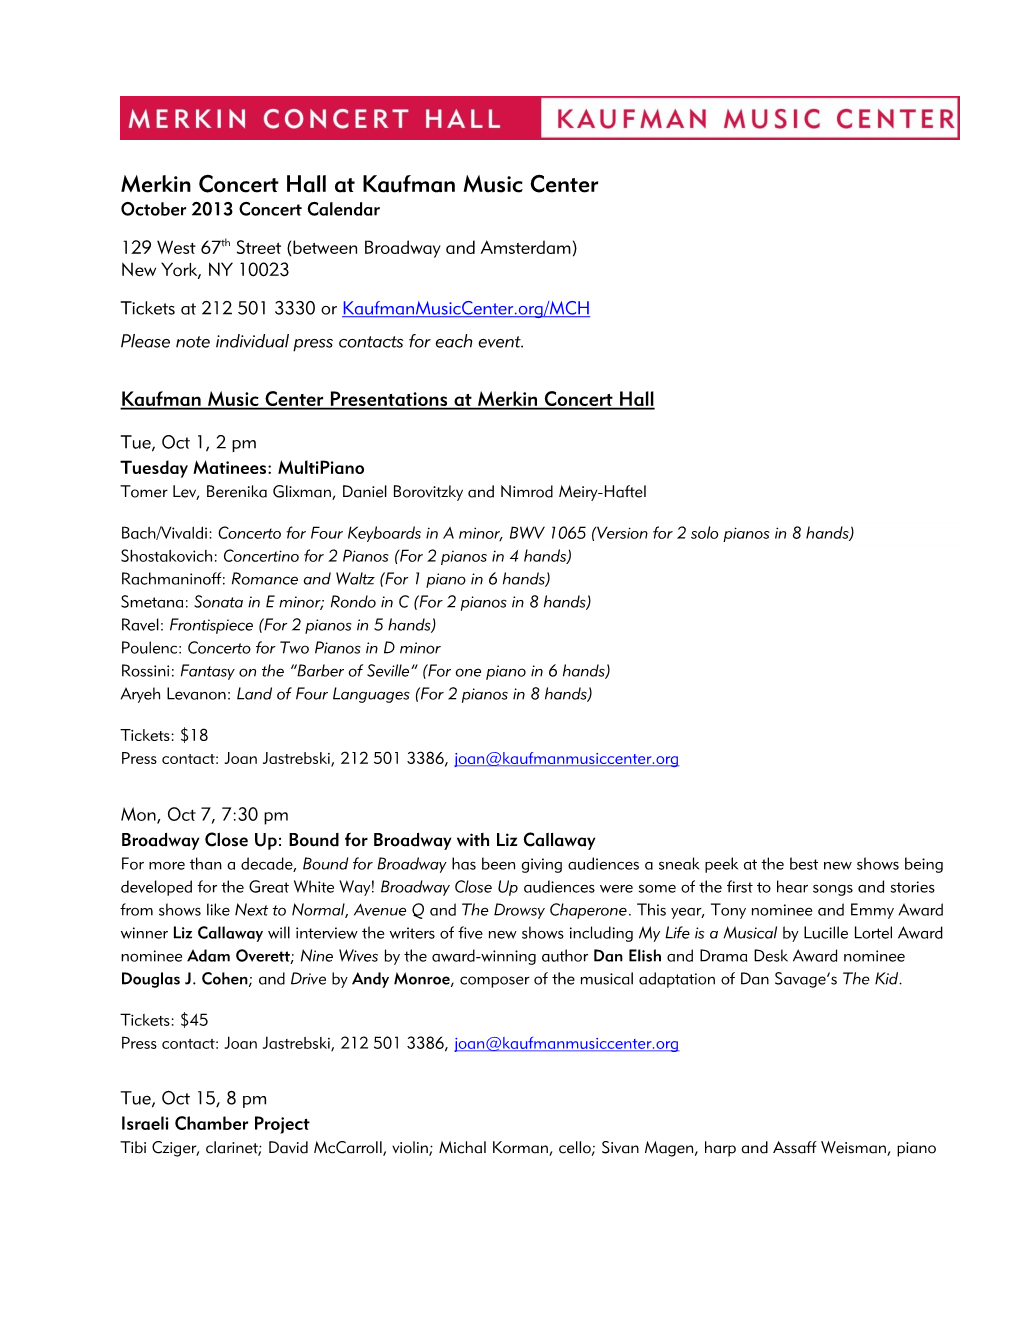 Merkin Concert Hall at Kaufman Music Center October 2013 Concert Calendar